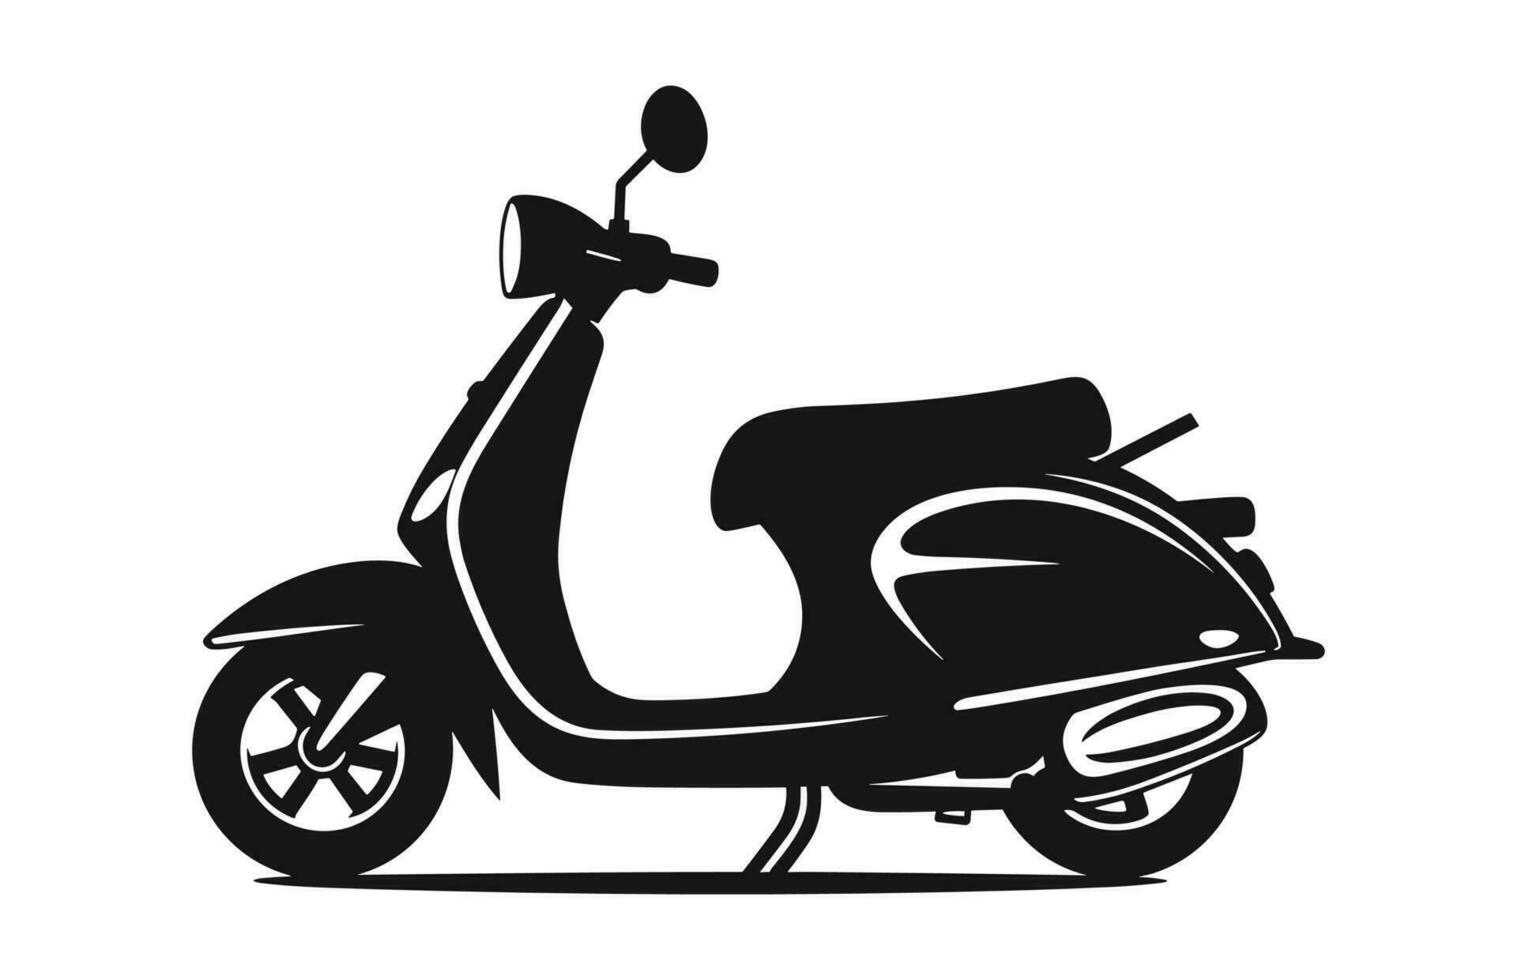 en motorcykel skoter vektor svart silhuett isolerat på en vit bakgrund